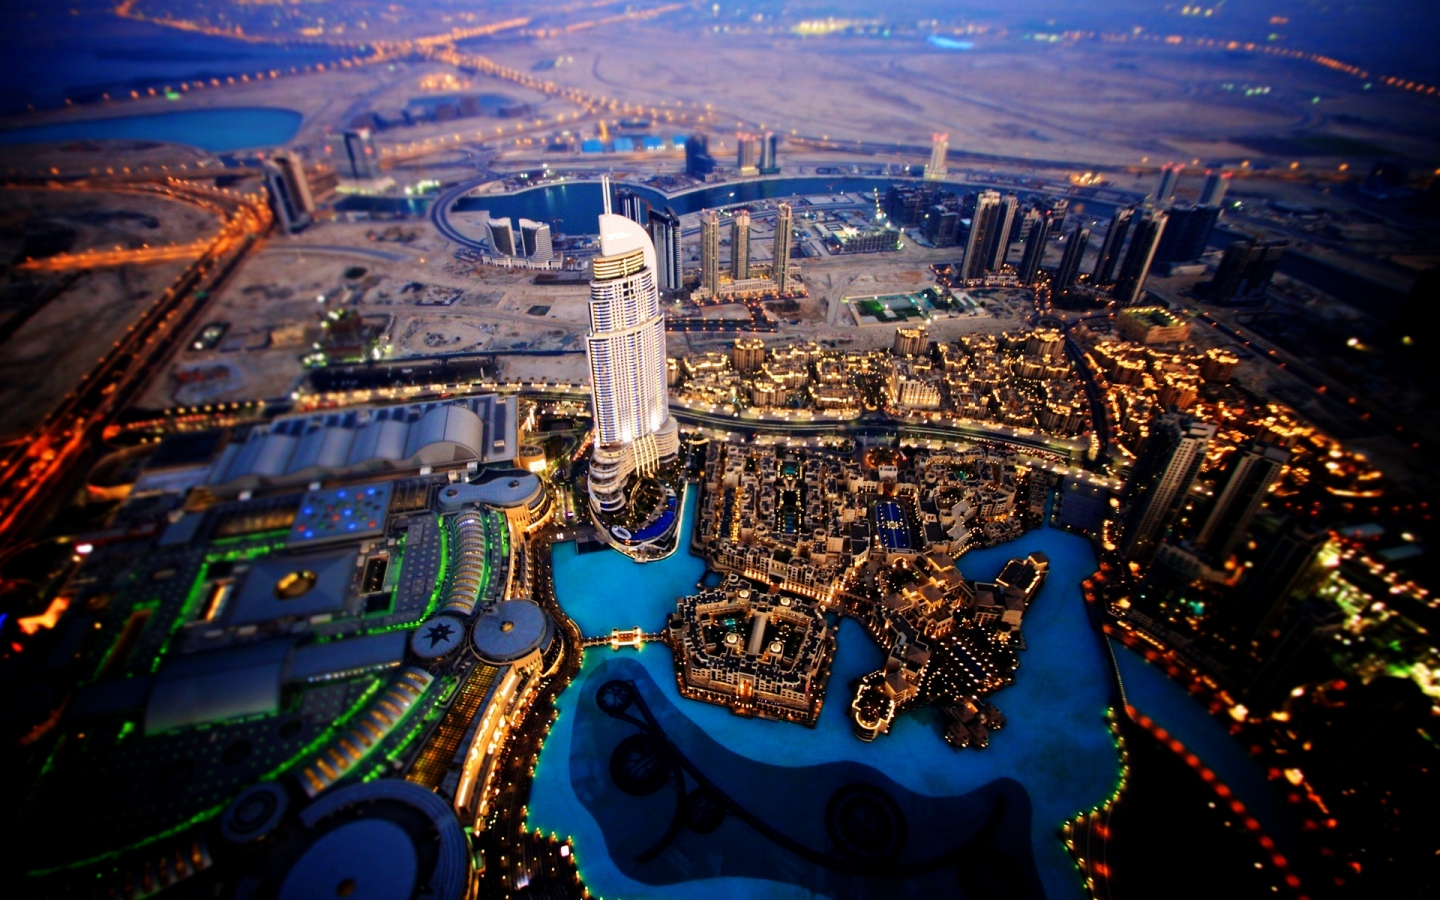 Dubai Sky View for 1440 x 900 widescreen resolution